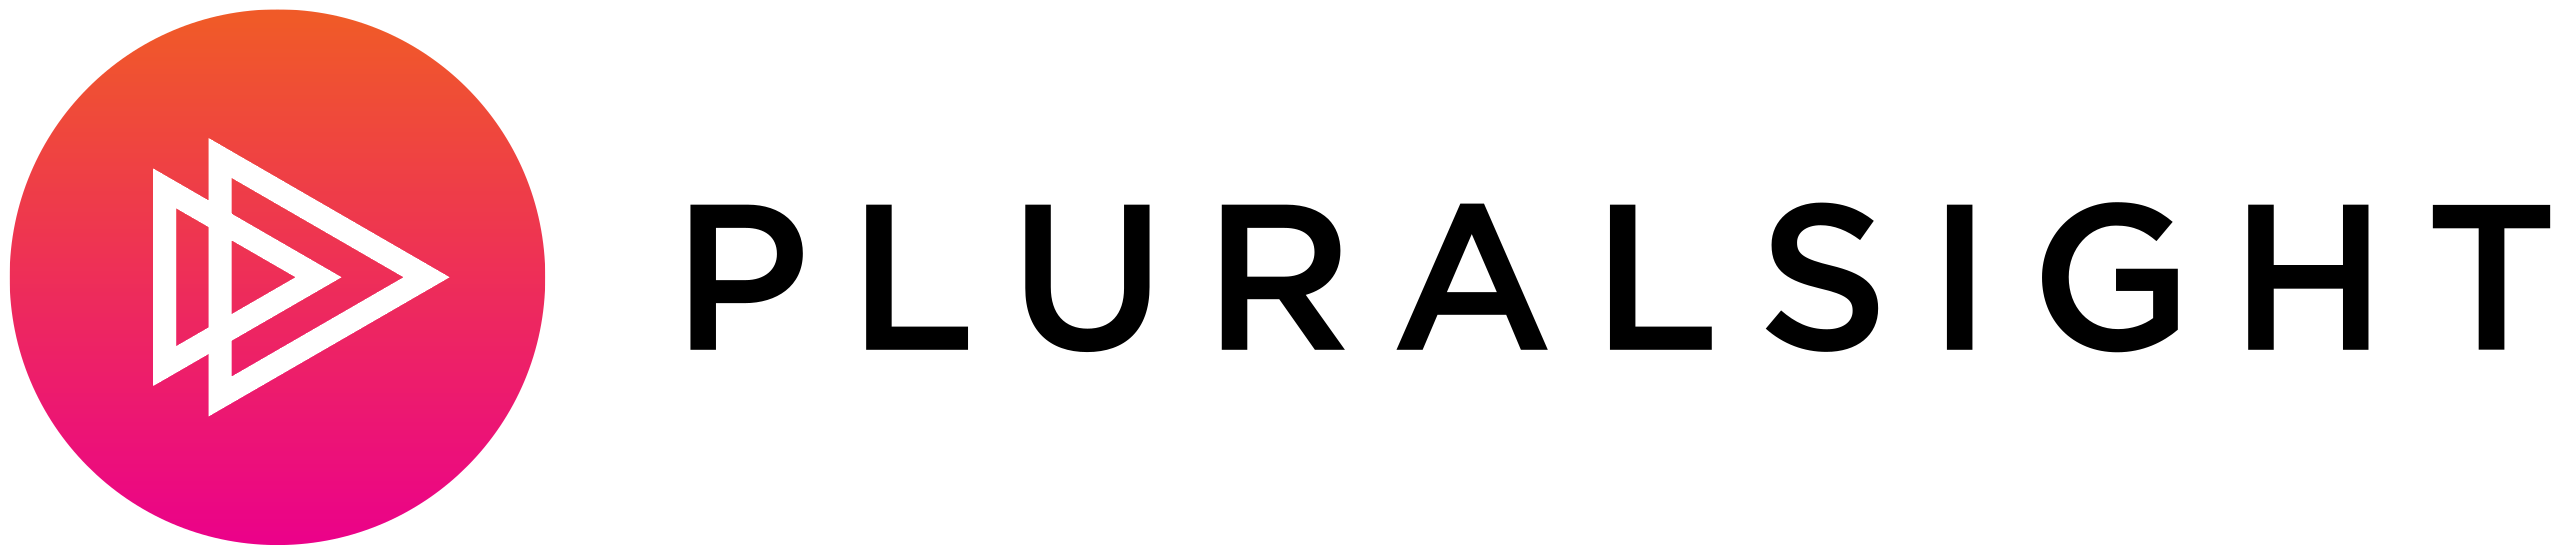 Plurasight logo